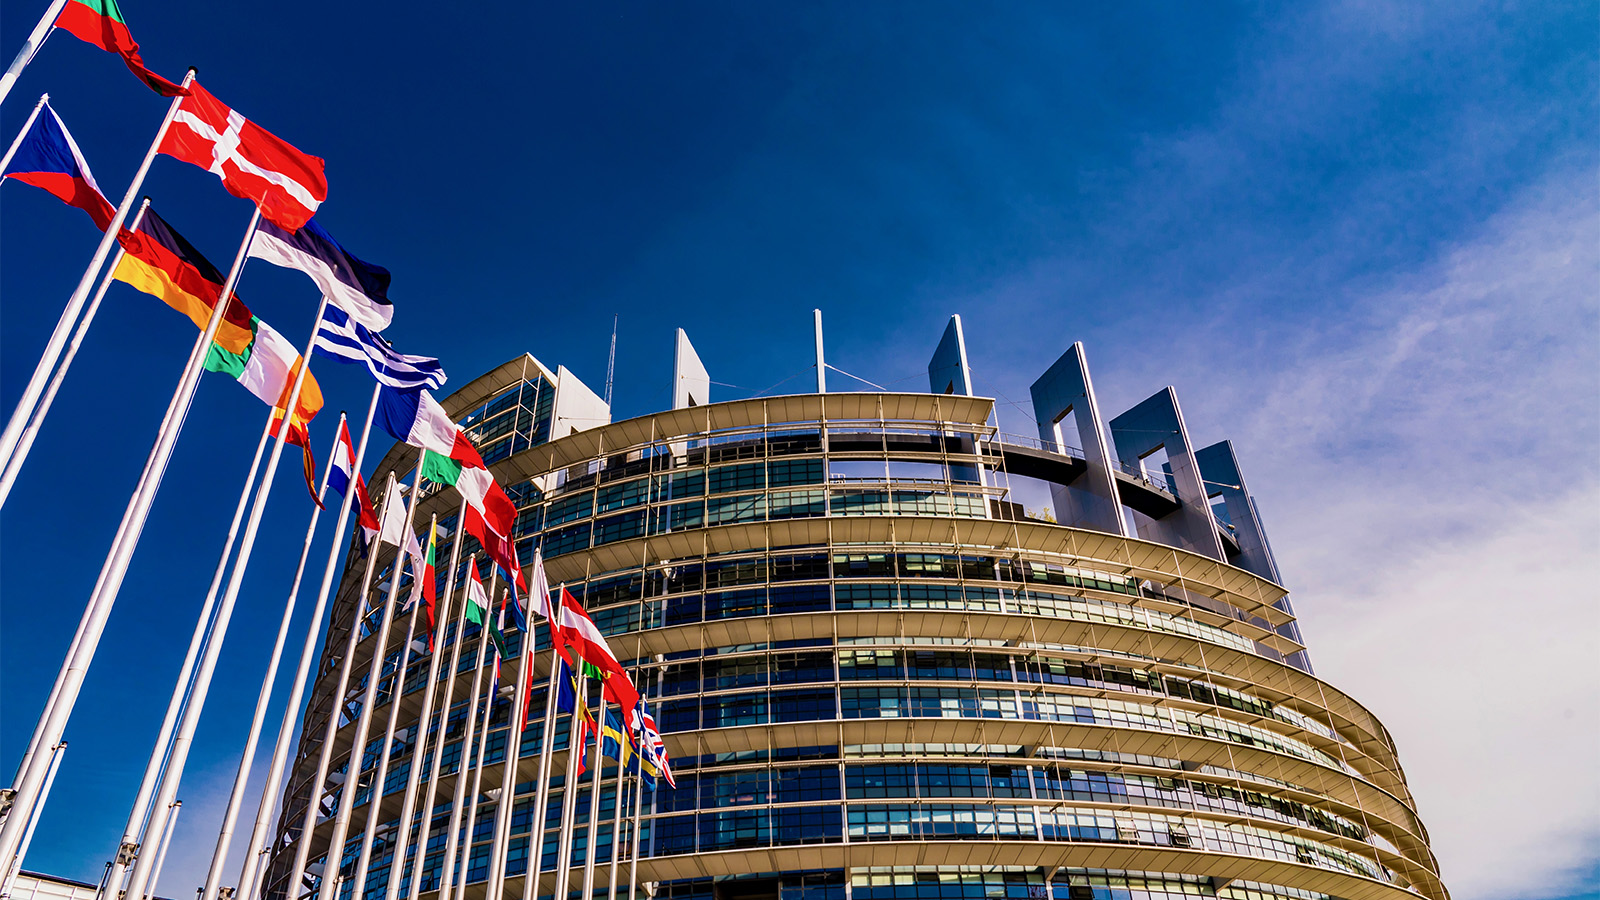 בניין הפרלמנט האירפואי ודגלי המדינות החברות בו (צילום: DiegoMariottini / Shutterstock.com).